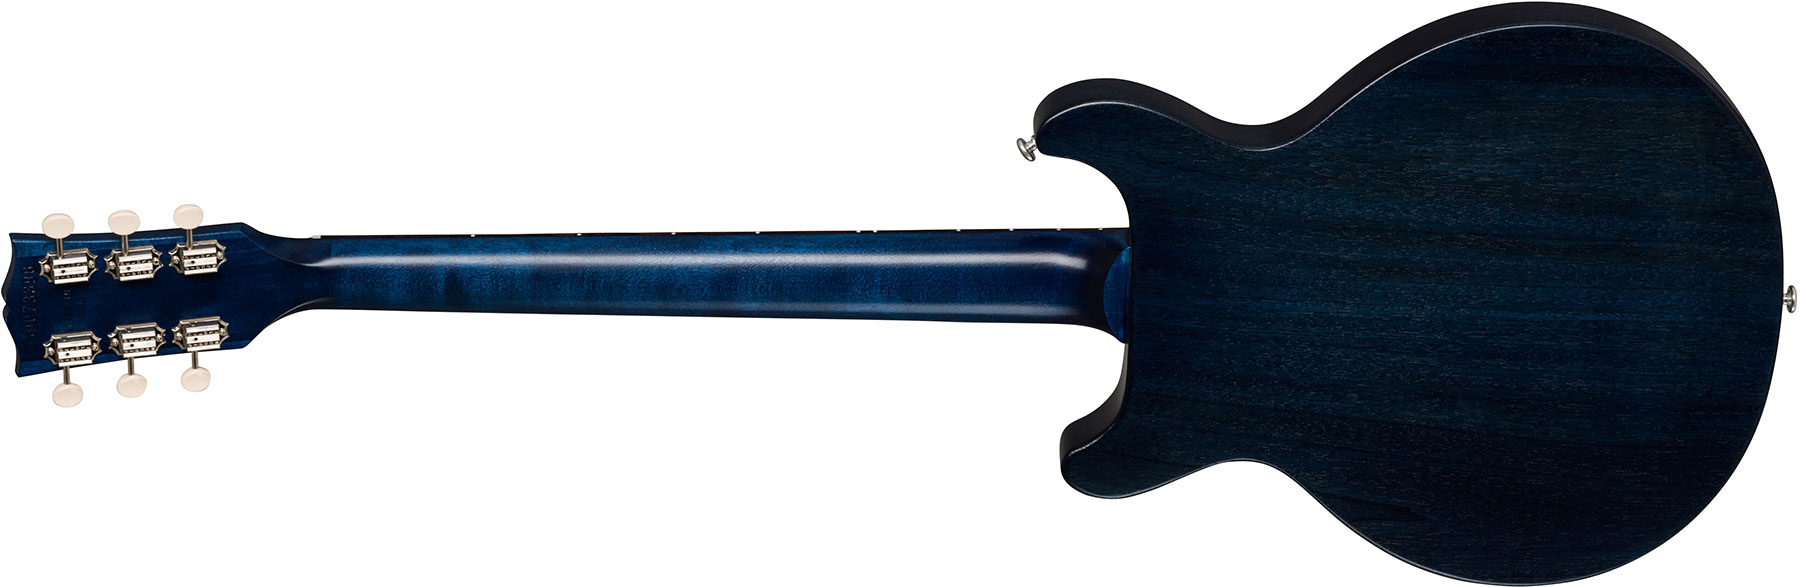 Gibson Les Paul Junior Tribute 2019 P90 Ht Rw - Blue Stain - Guitare Électrique Single Cut - Variation 2